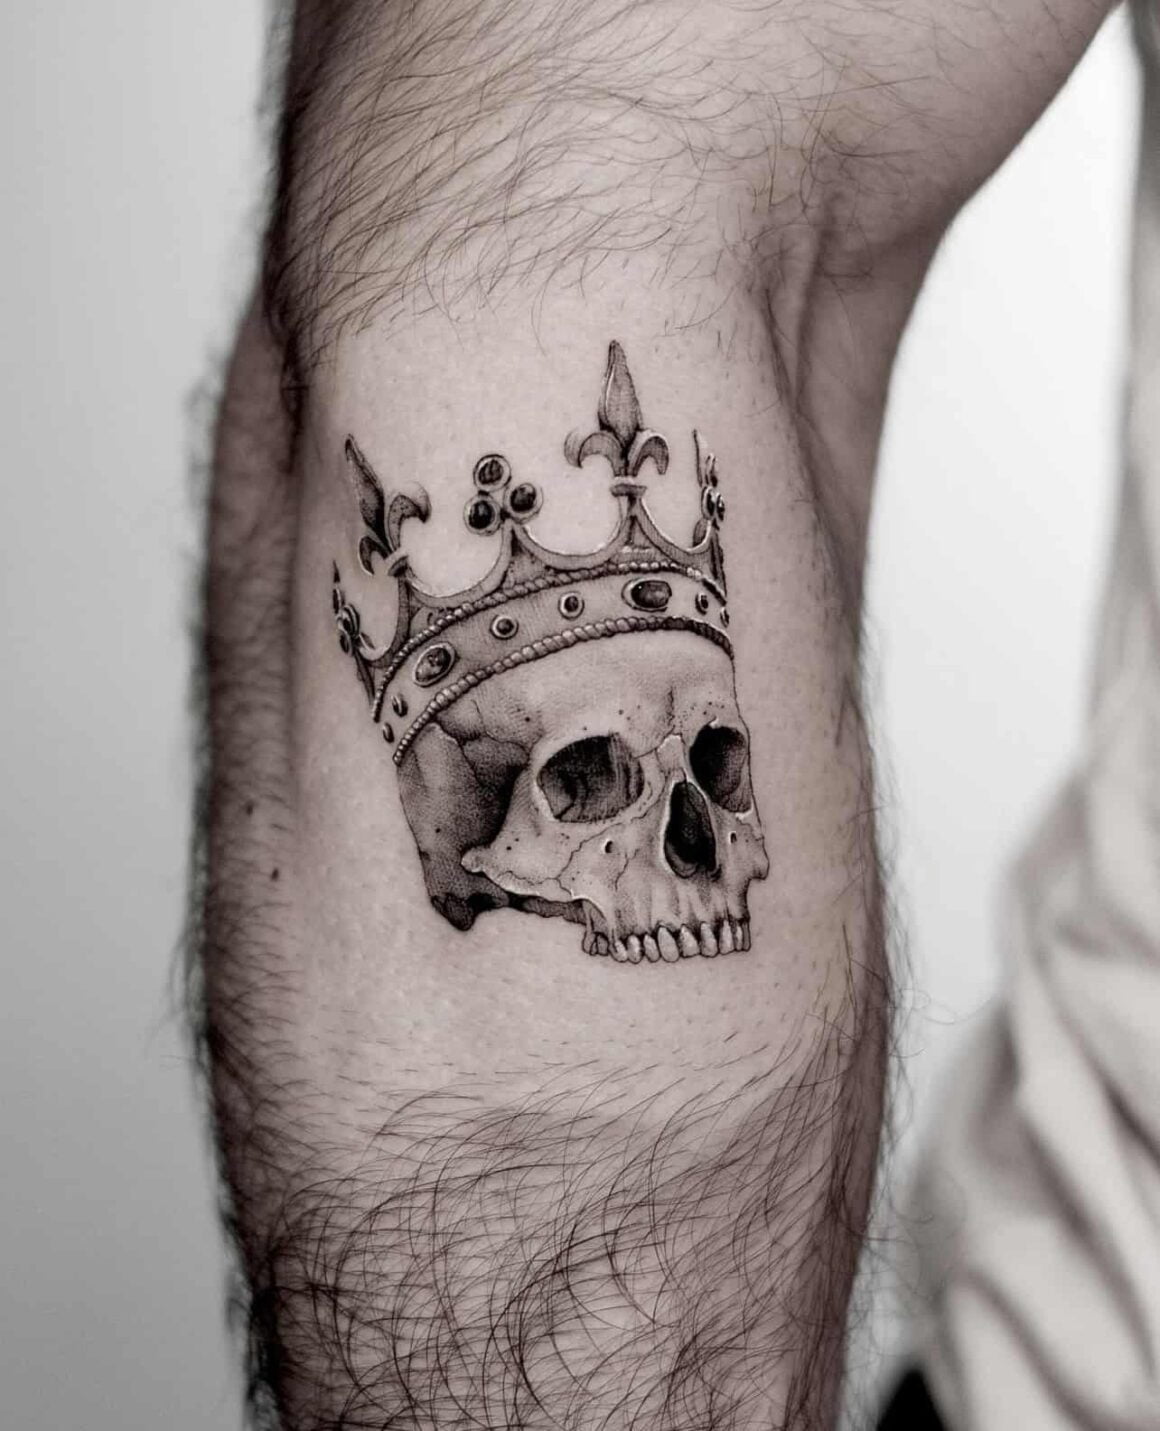 Heart crown tattoo by AntoniettaArnoneArts on DeviantArt